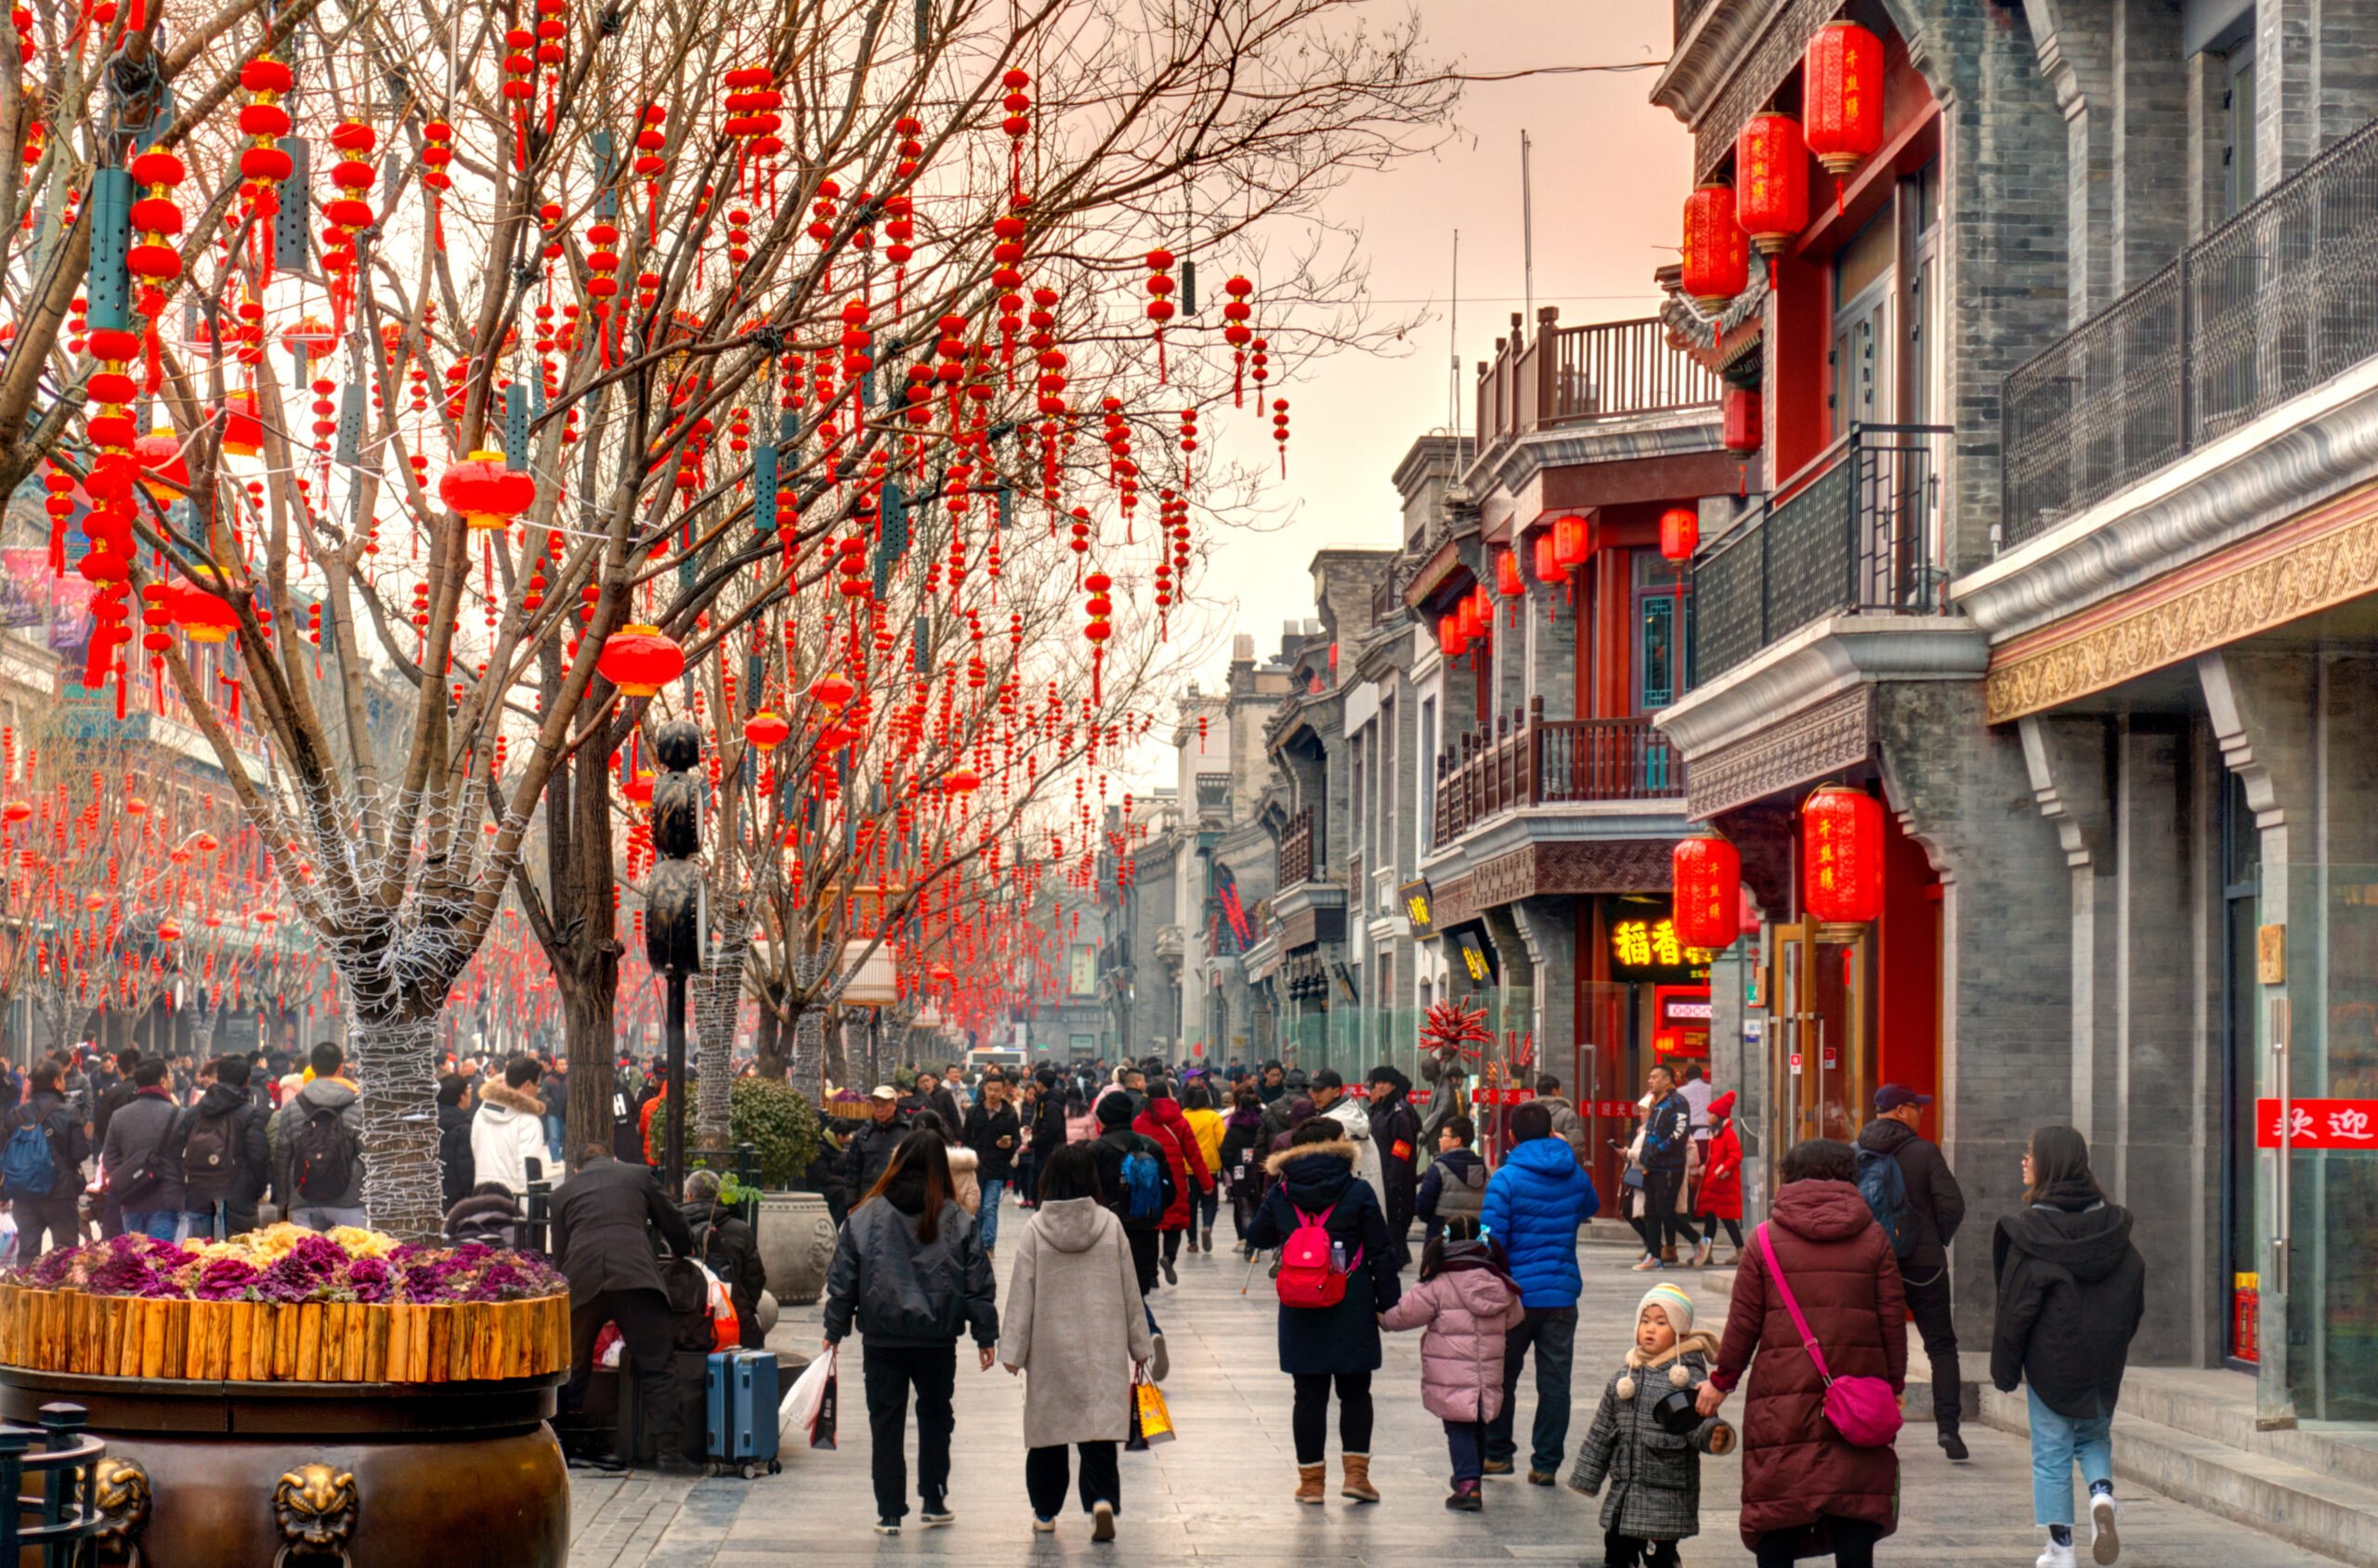 Capodanno cinese: shopping influenzato da campagne marketing e valori tradizionali